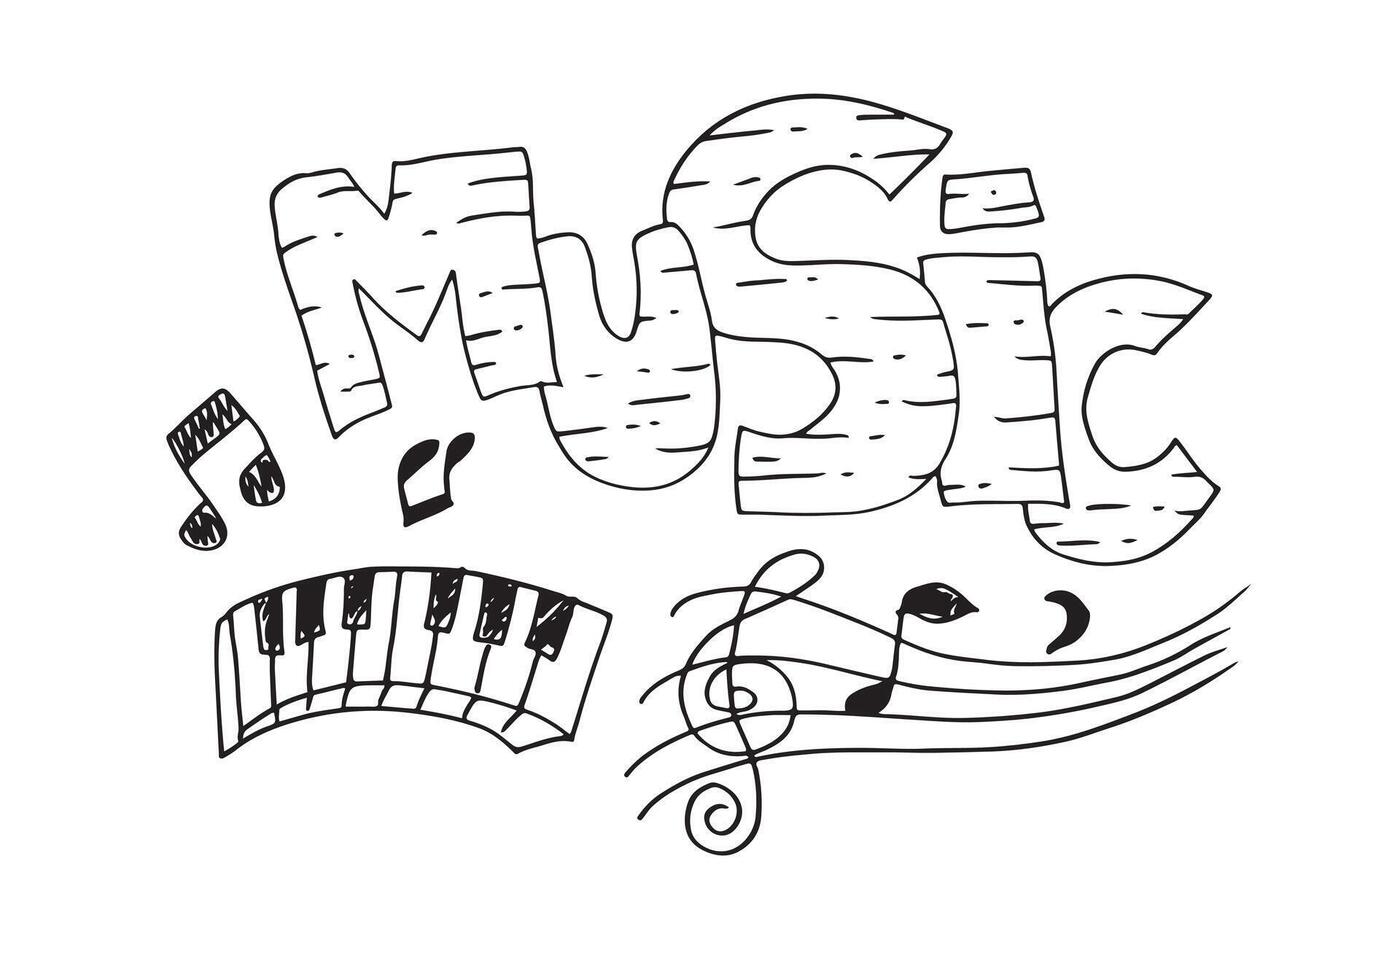 musik hintergrund handgezeichnete musikset illustration. Illustrationen von Musikbildern, Designkonzept. vektor